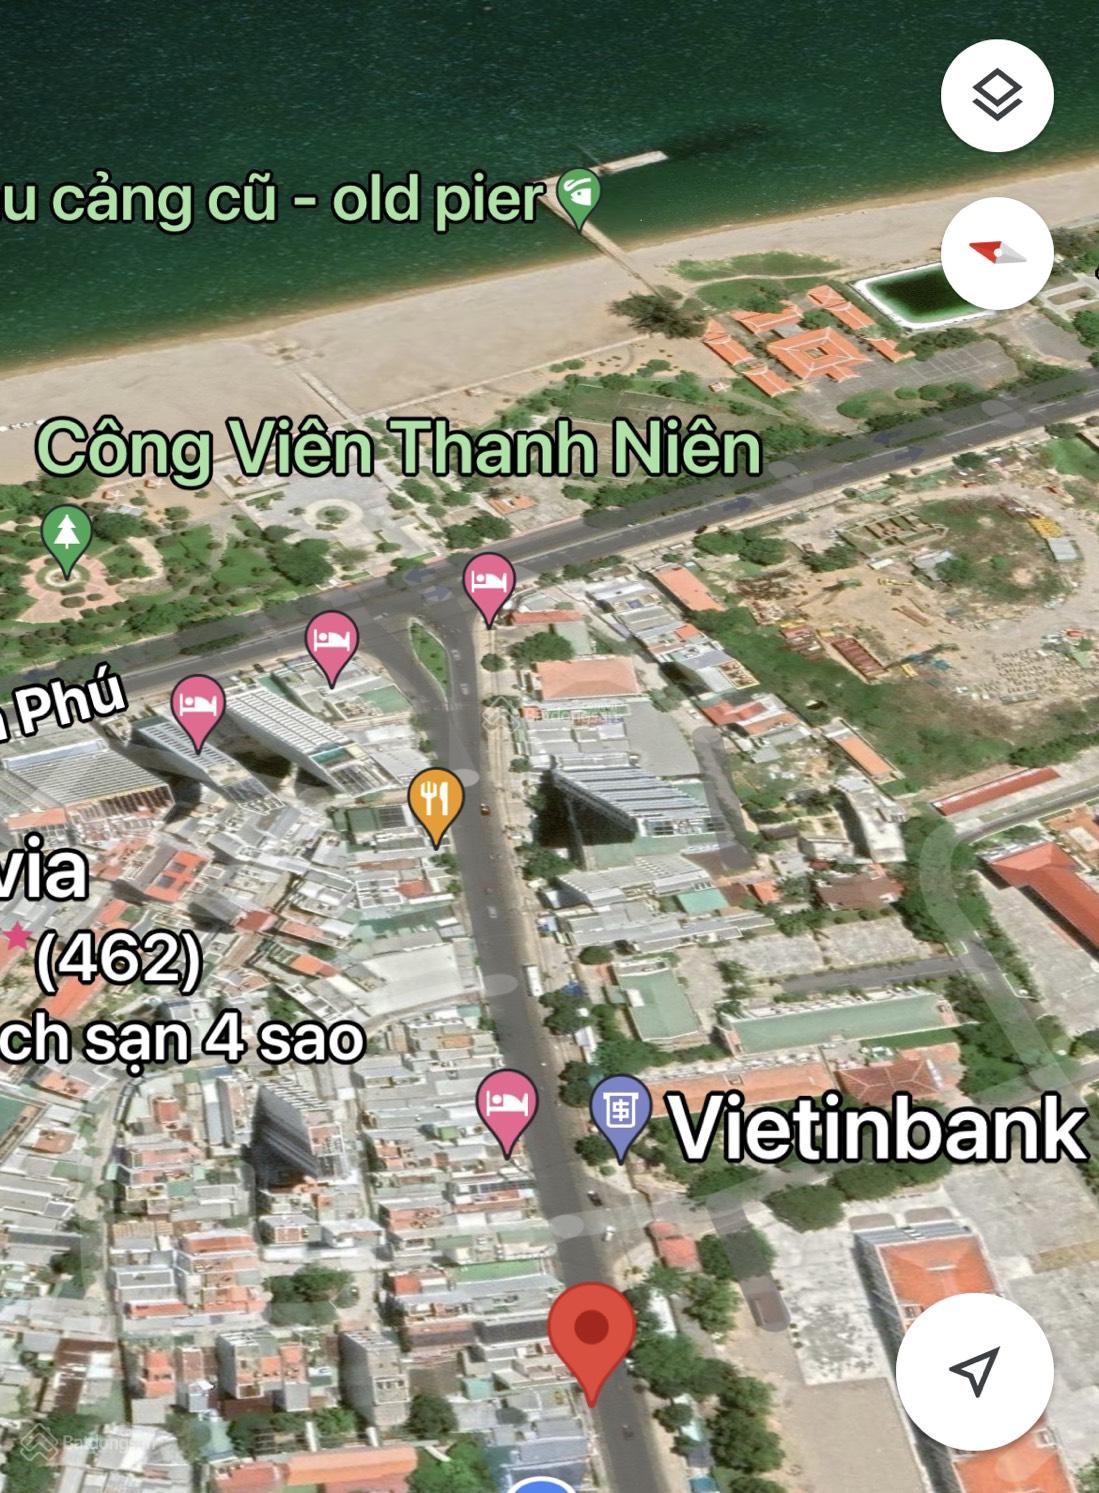 Chính chủ cần bán nhà mặt tiền đường Dã Tượng Trung tâm TP Nha Trang. Liên hệ 0903571035 (Chị Hoa)